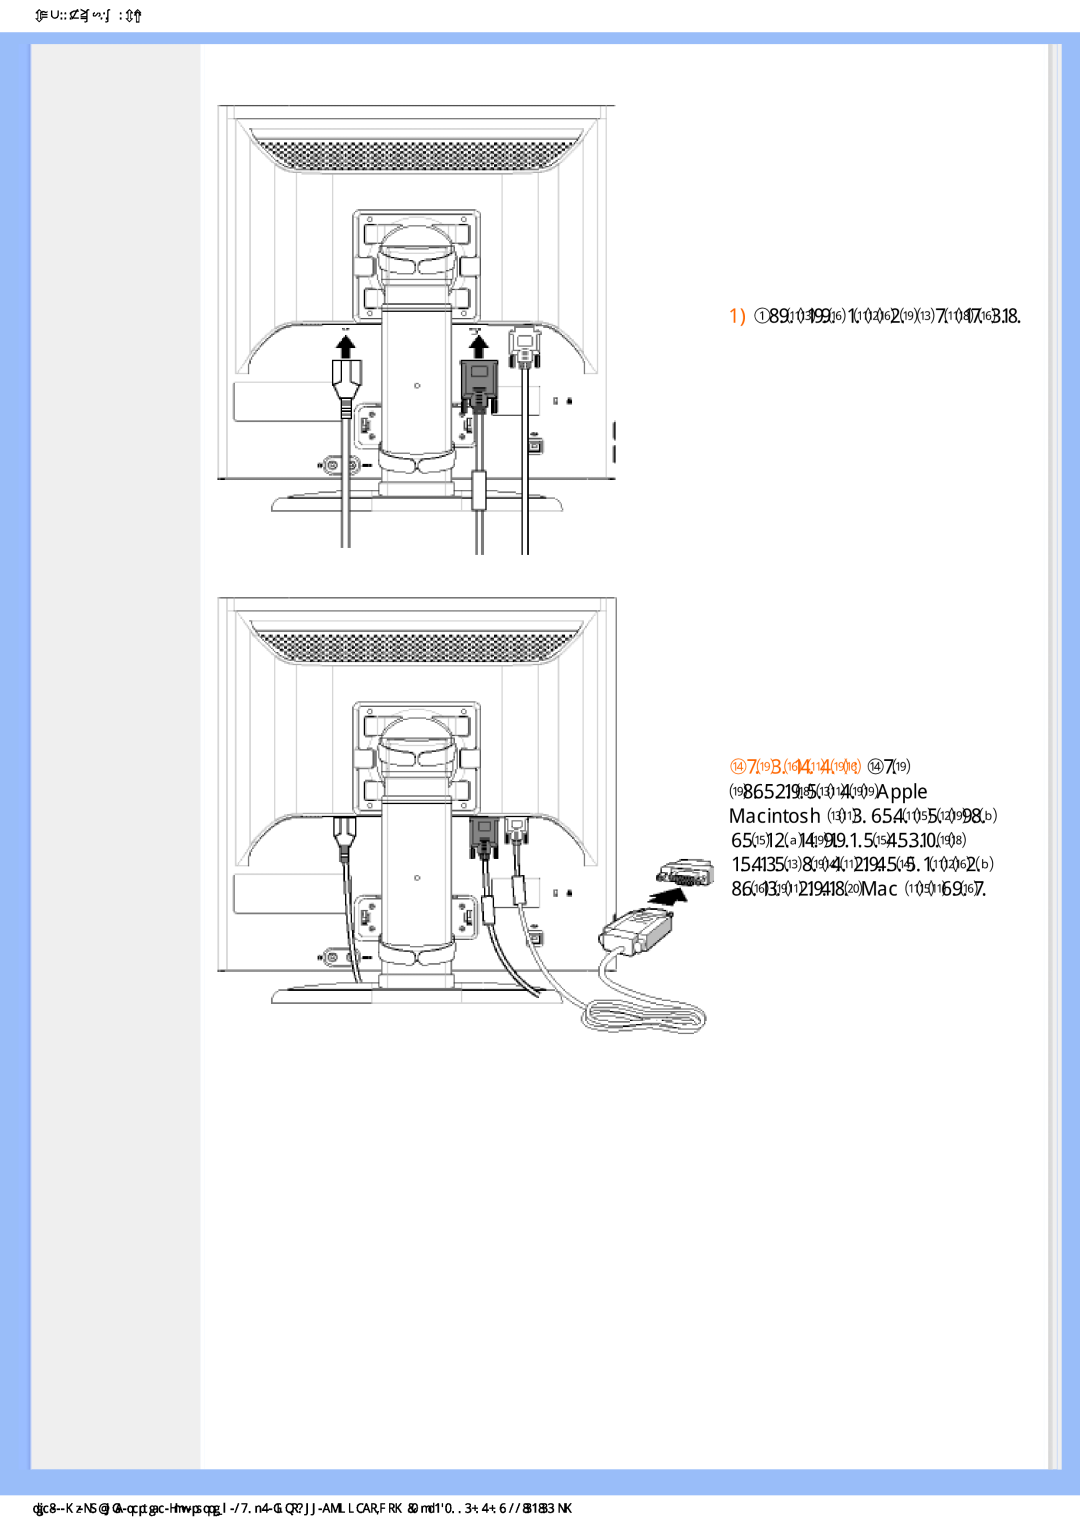 Philips 190P6ES manual   ,  ȼɫɬɚɜɶɬɟɤɚɛɟɥɢɜɪɚɡɴɟɦɵ, ǮȜȒȘșȬȥȓțȖȓȘǮǩ,  